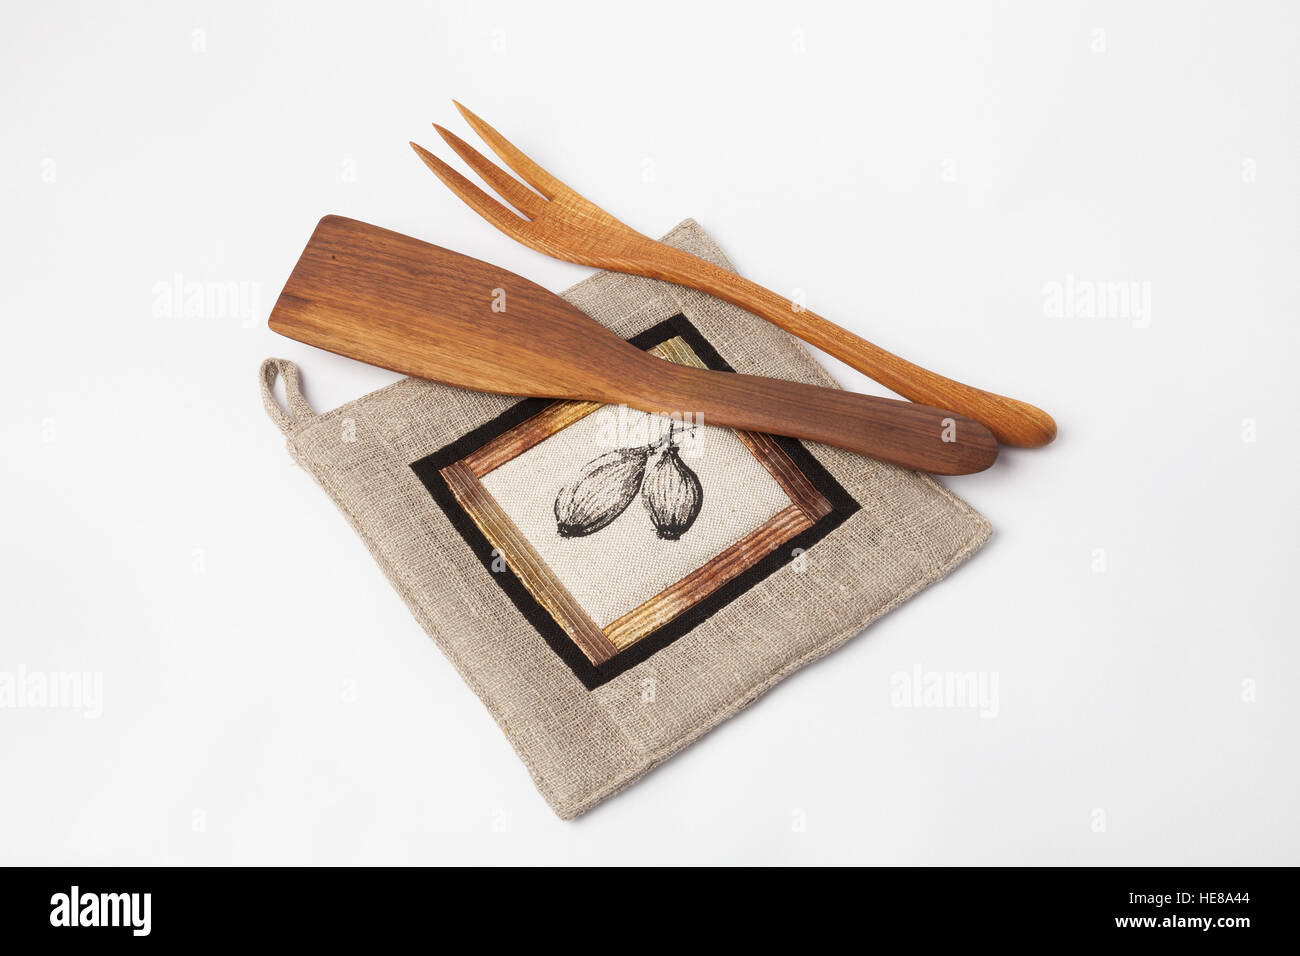 Ustensiles de cuisine - Linge de maison manique, outils en bois isolé sur blanc Banque D'Images